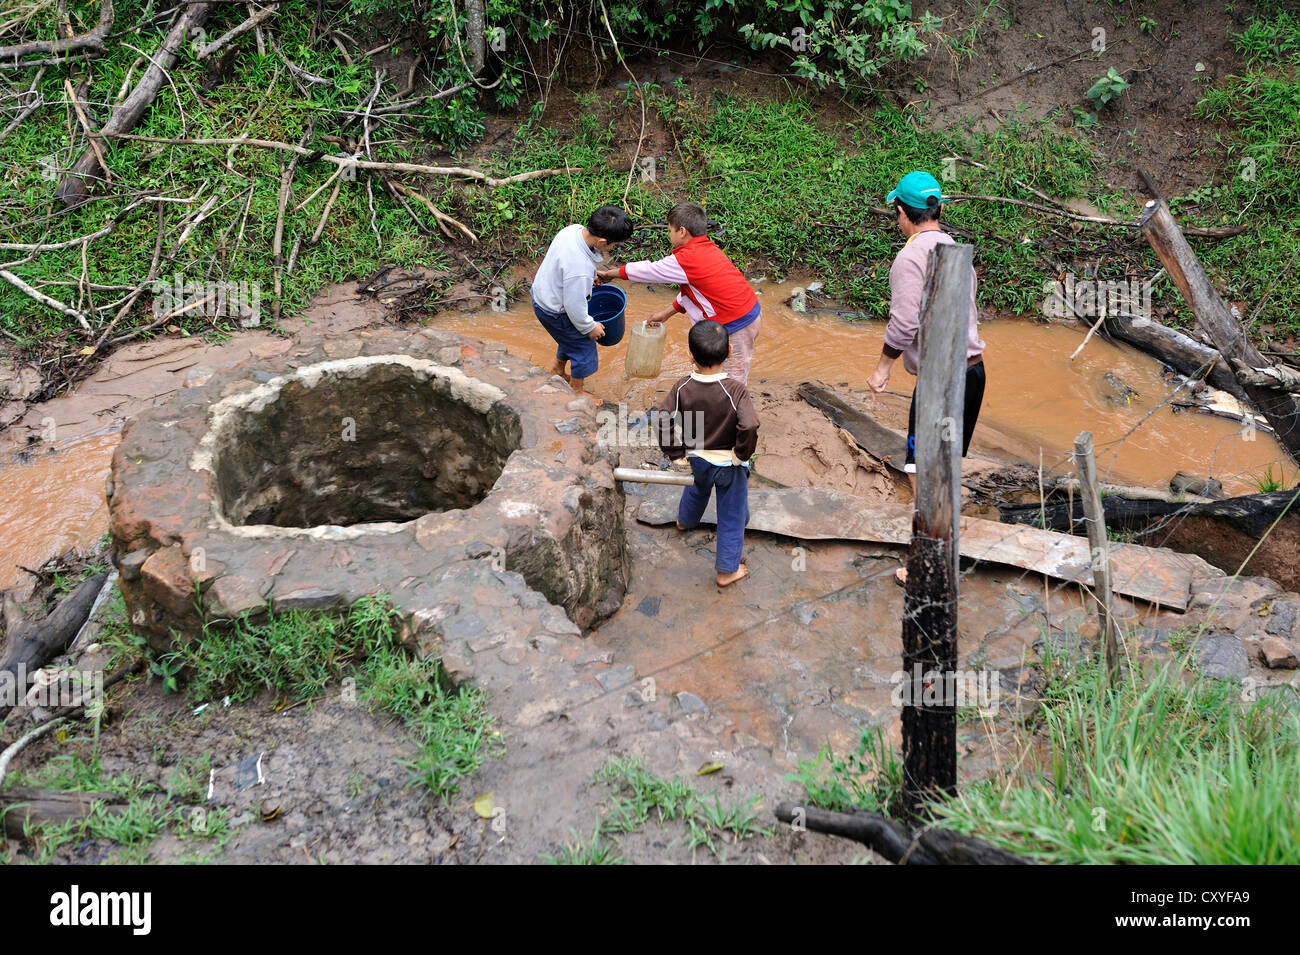 Les enfants vont chercher de l'eau d'un ruisseau Muddy, Comunida Martillo, Caaguazu, Paraguay, Amérique du Sud Banque D'Images